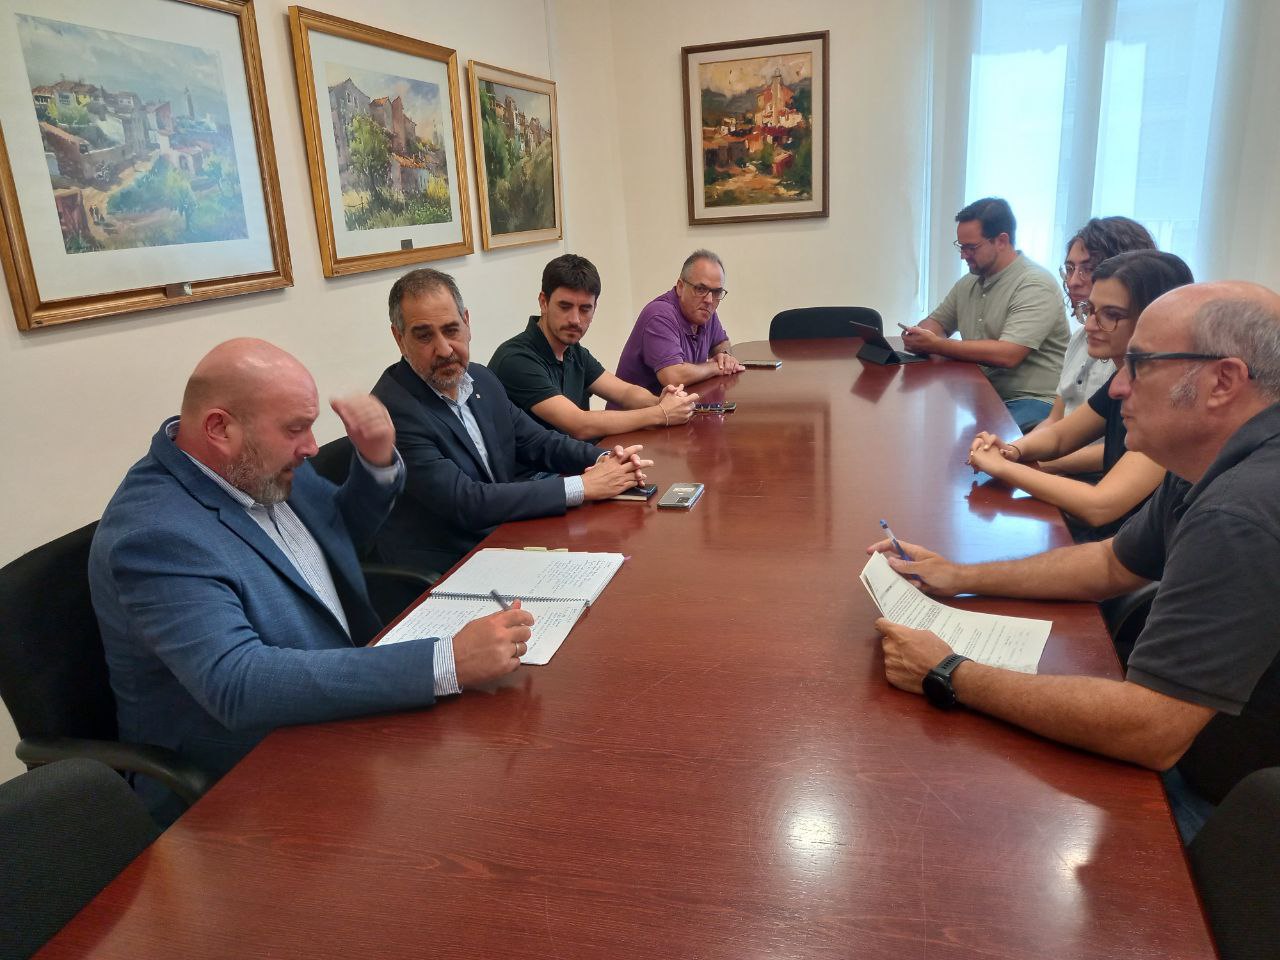 El delegat del Govern a Barcelona, Joan Borràs, es reuneix amb l'Alcalde, Jordi Parent i regidors de l'Ajuntament d'Olesa